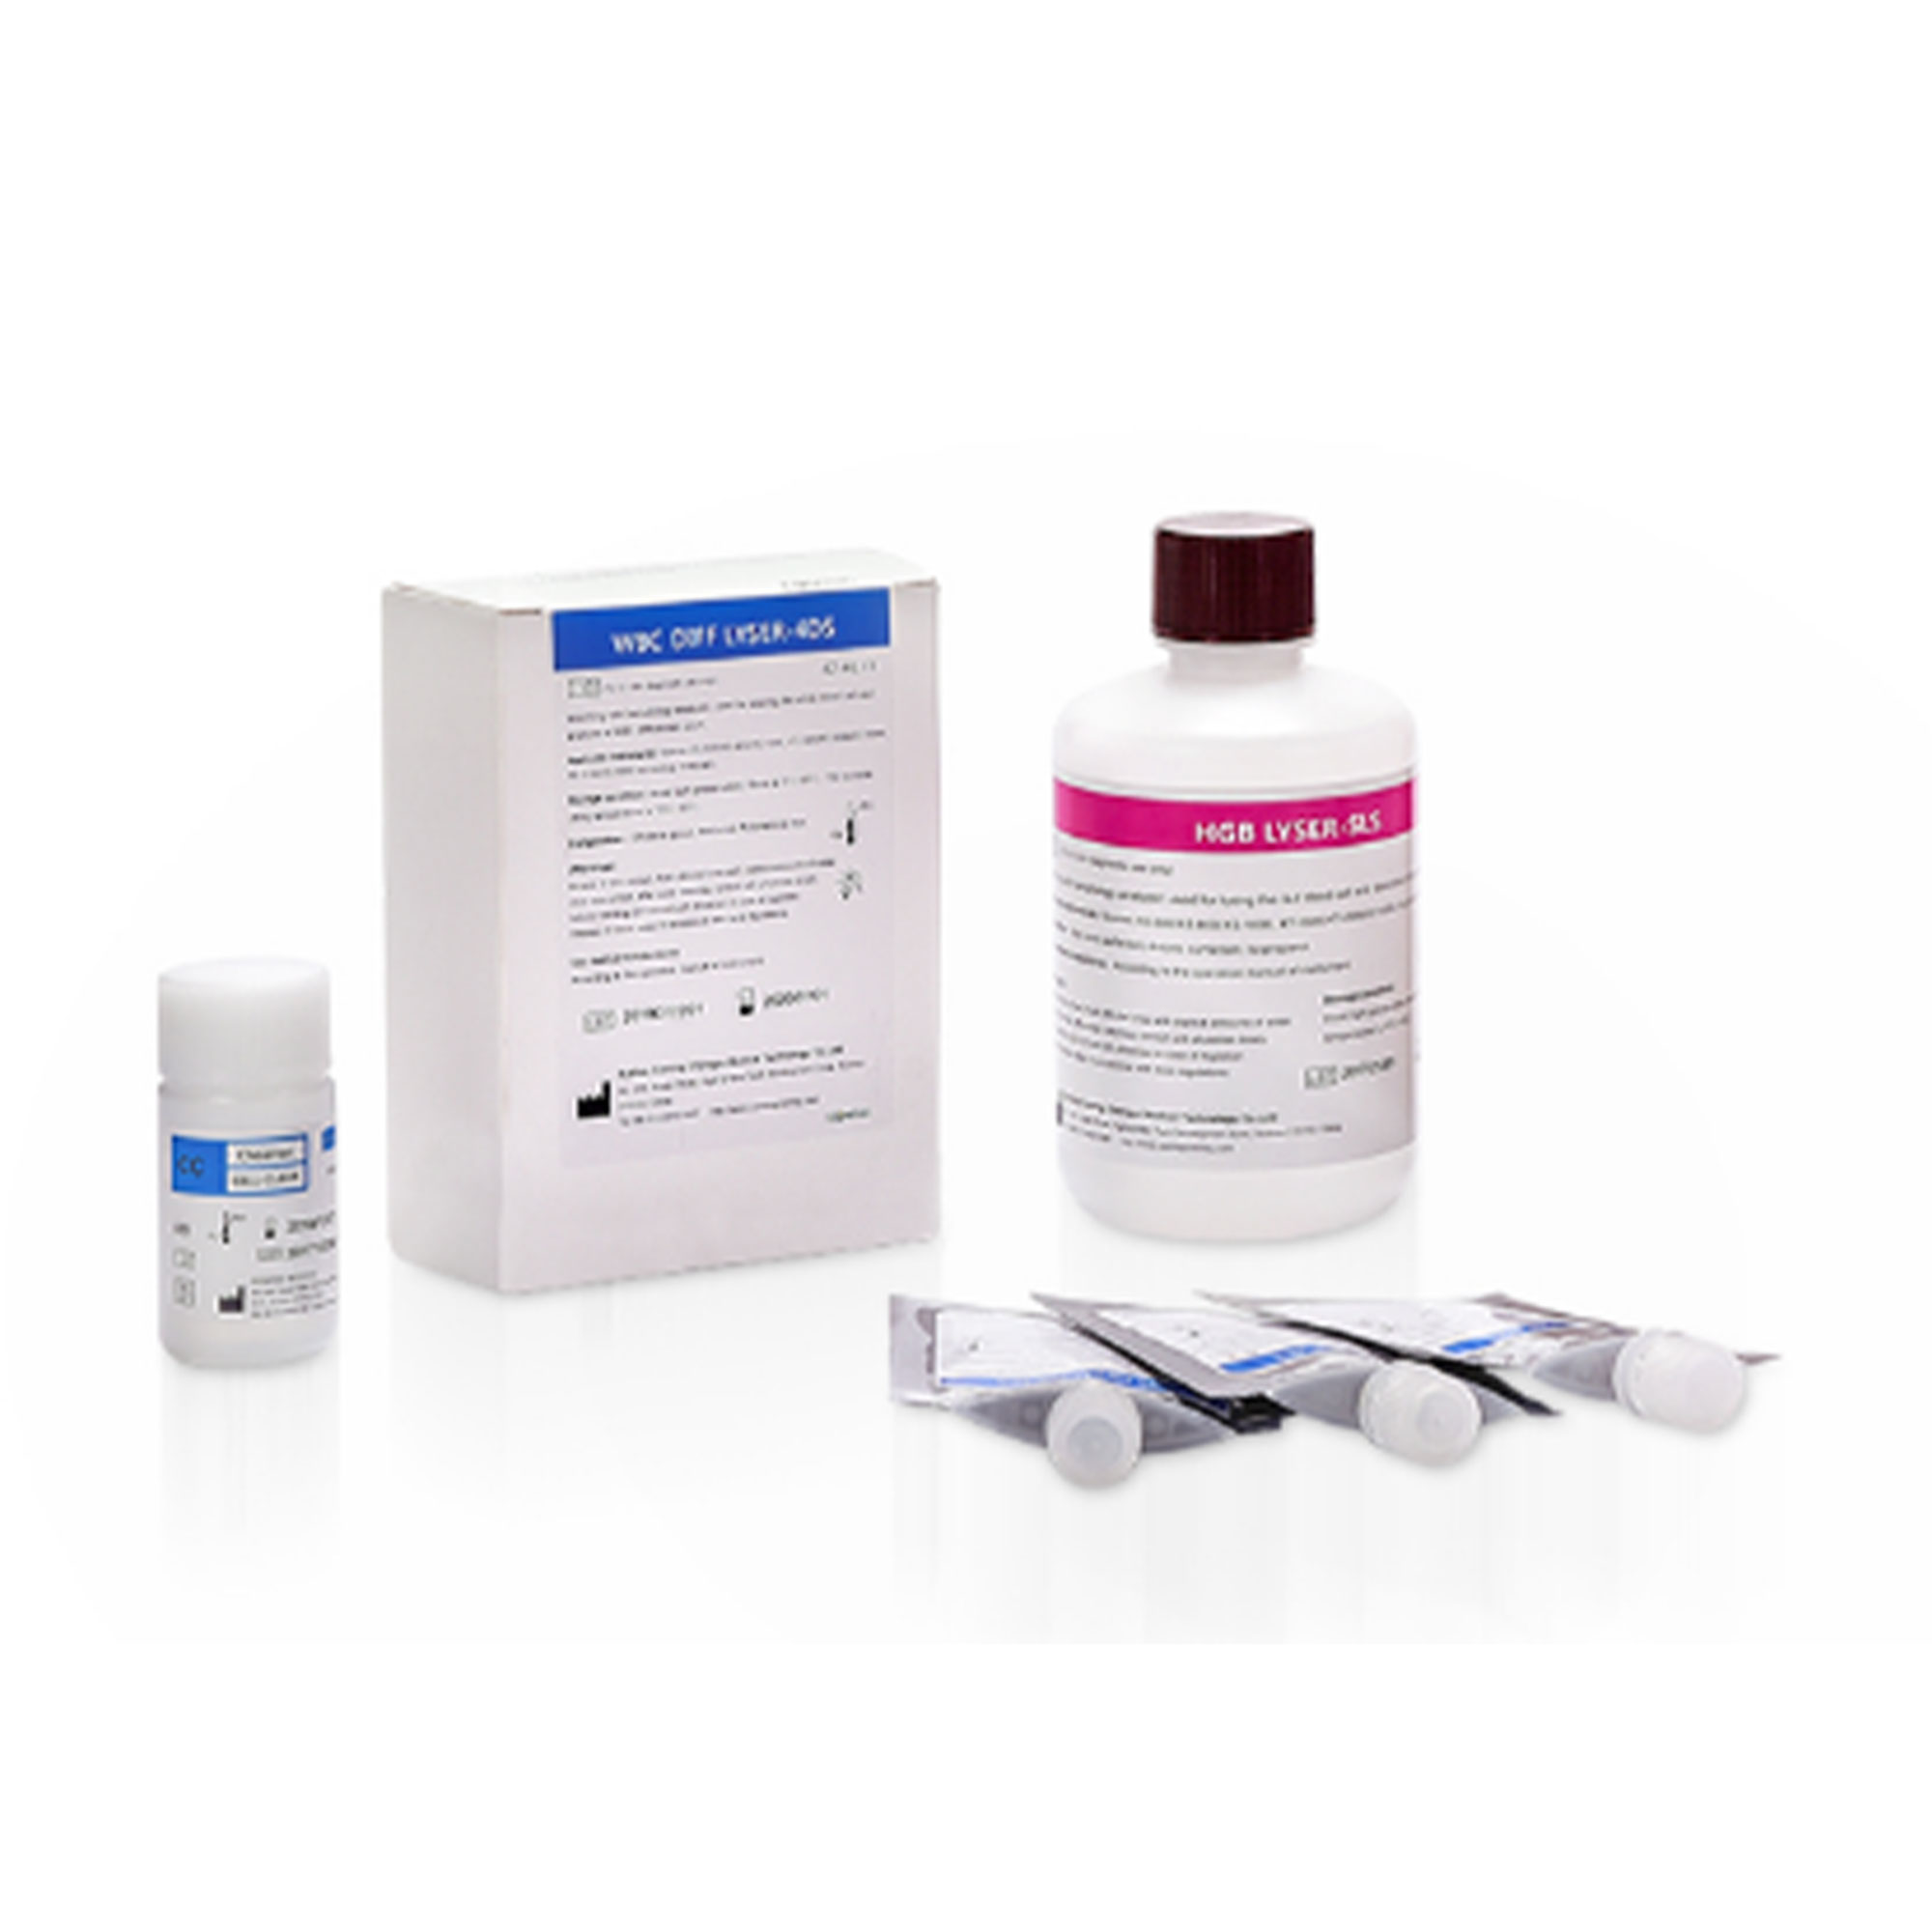 محلول لایز سیسمکس - SOLUTION LYSE SYSMEX  - دانا تجهیز آریا - مصرفی - هماتولوژی و بانک خون - آریا تشخیص پارس